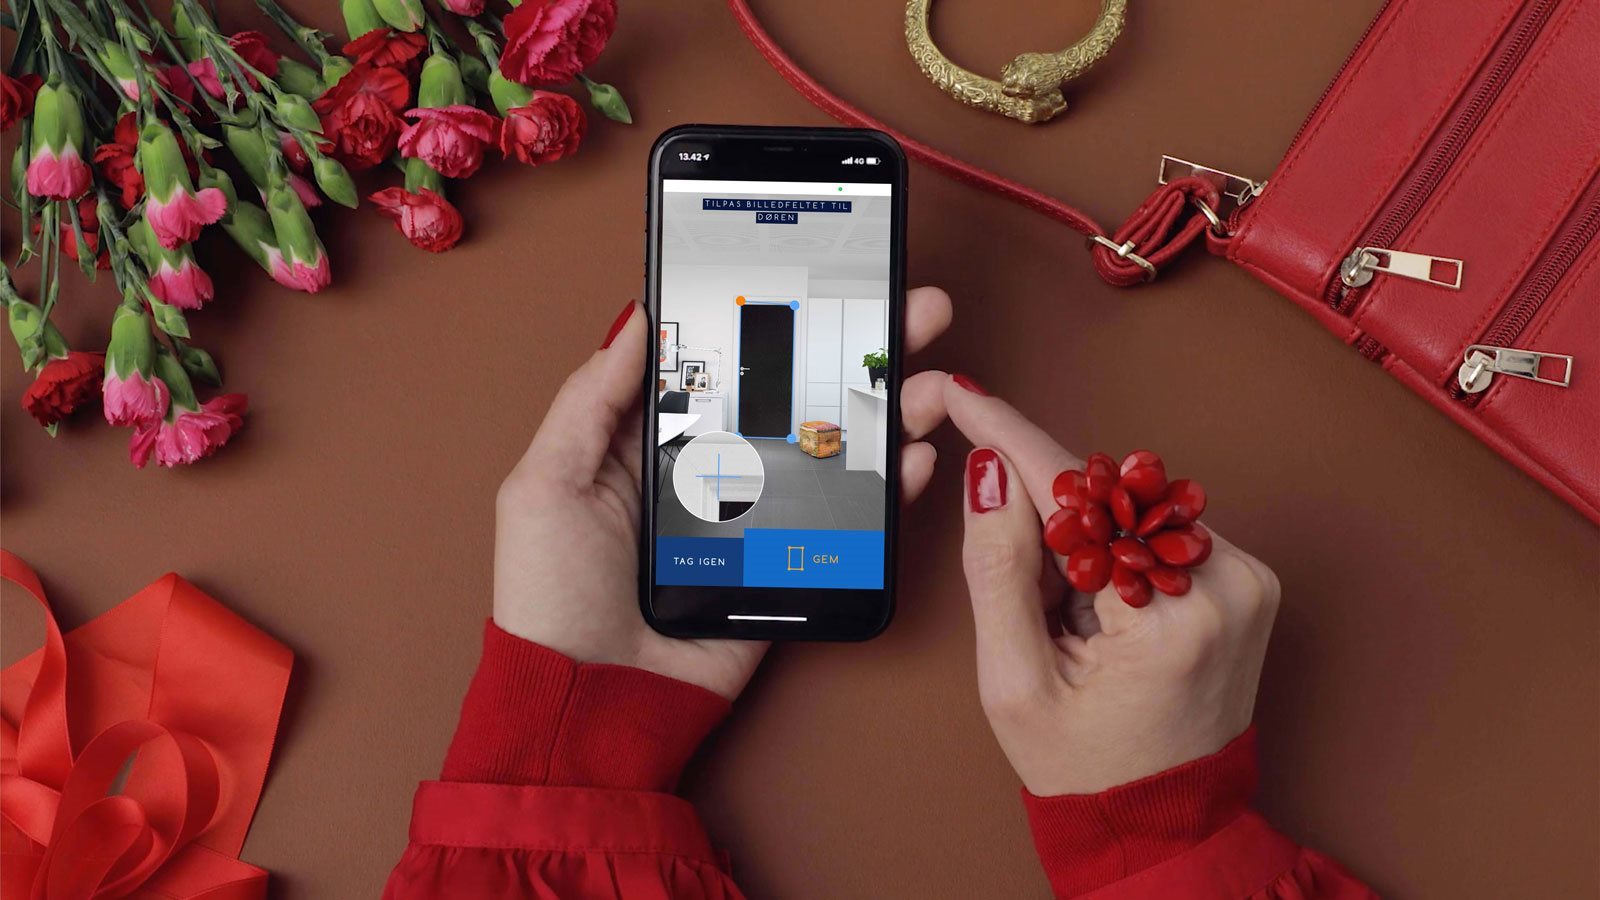 Find din nye dør med smart app